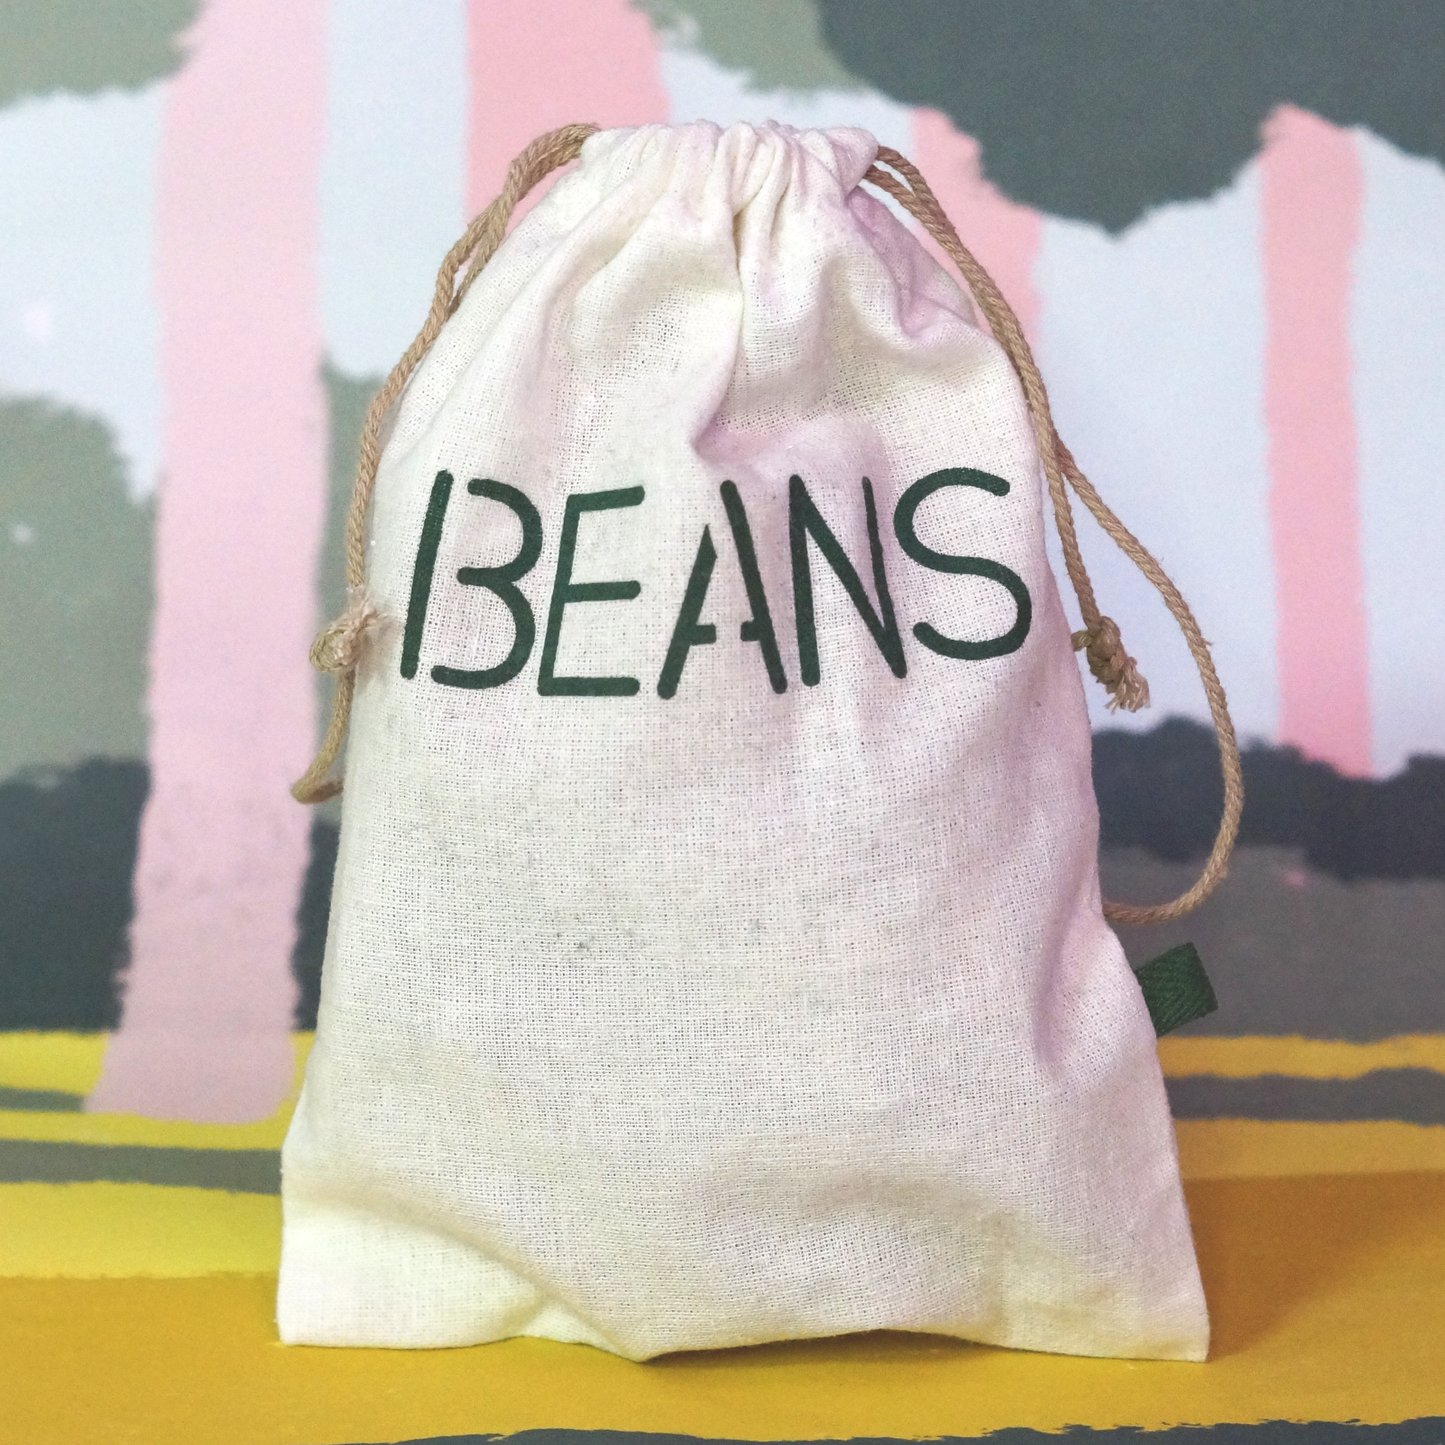 'Grain, Beans, Pasta' 3-Pack Reusable Cotton Bags